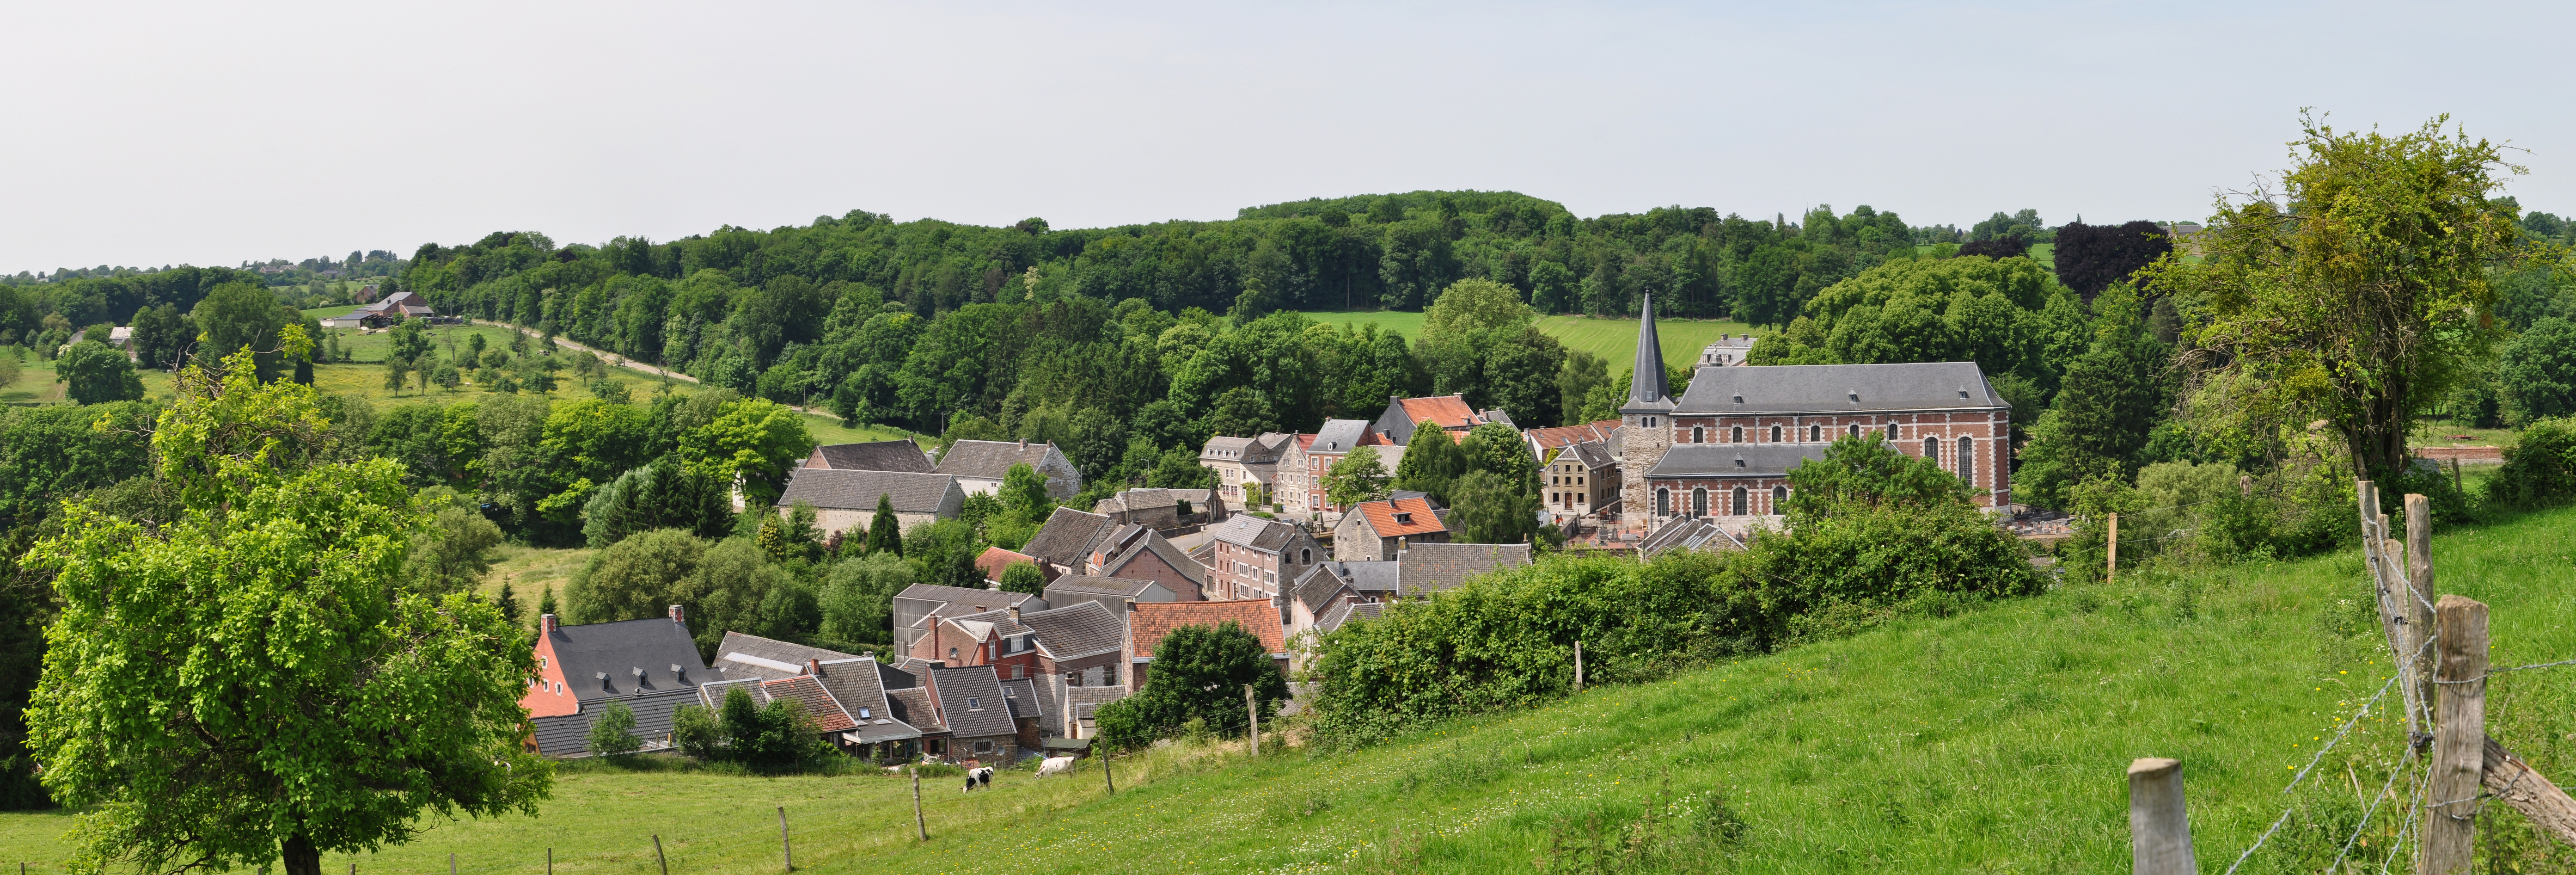 Vue sur Soiron, dans la province de Liège. Un des Plus Beaux Villages de Wallonie